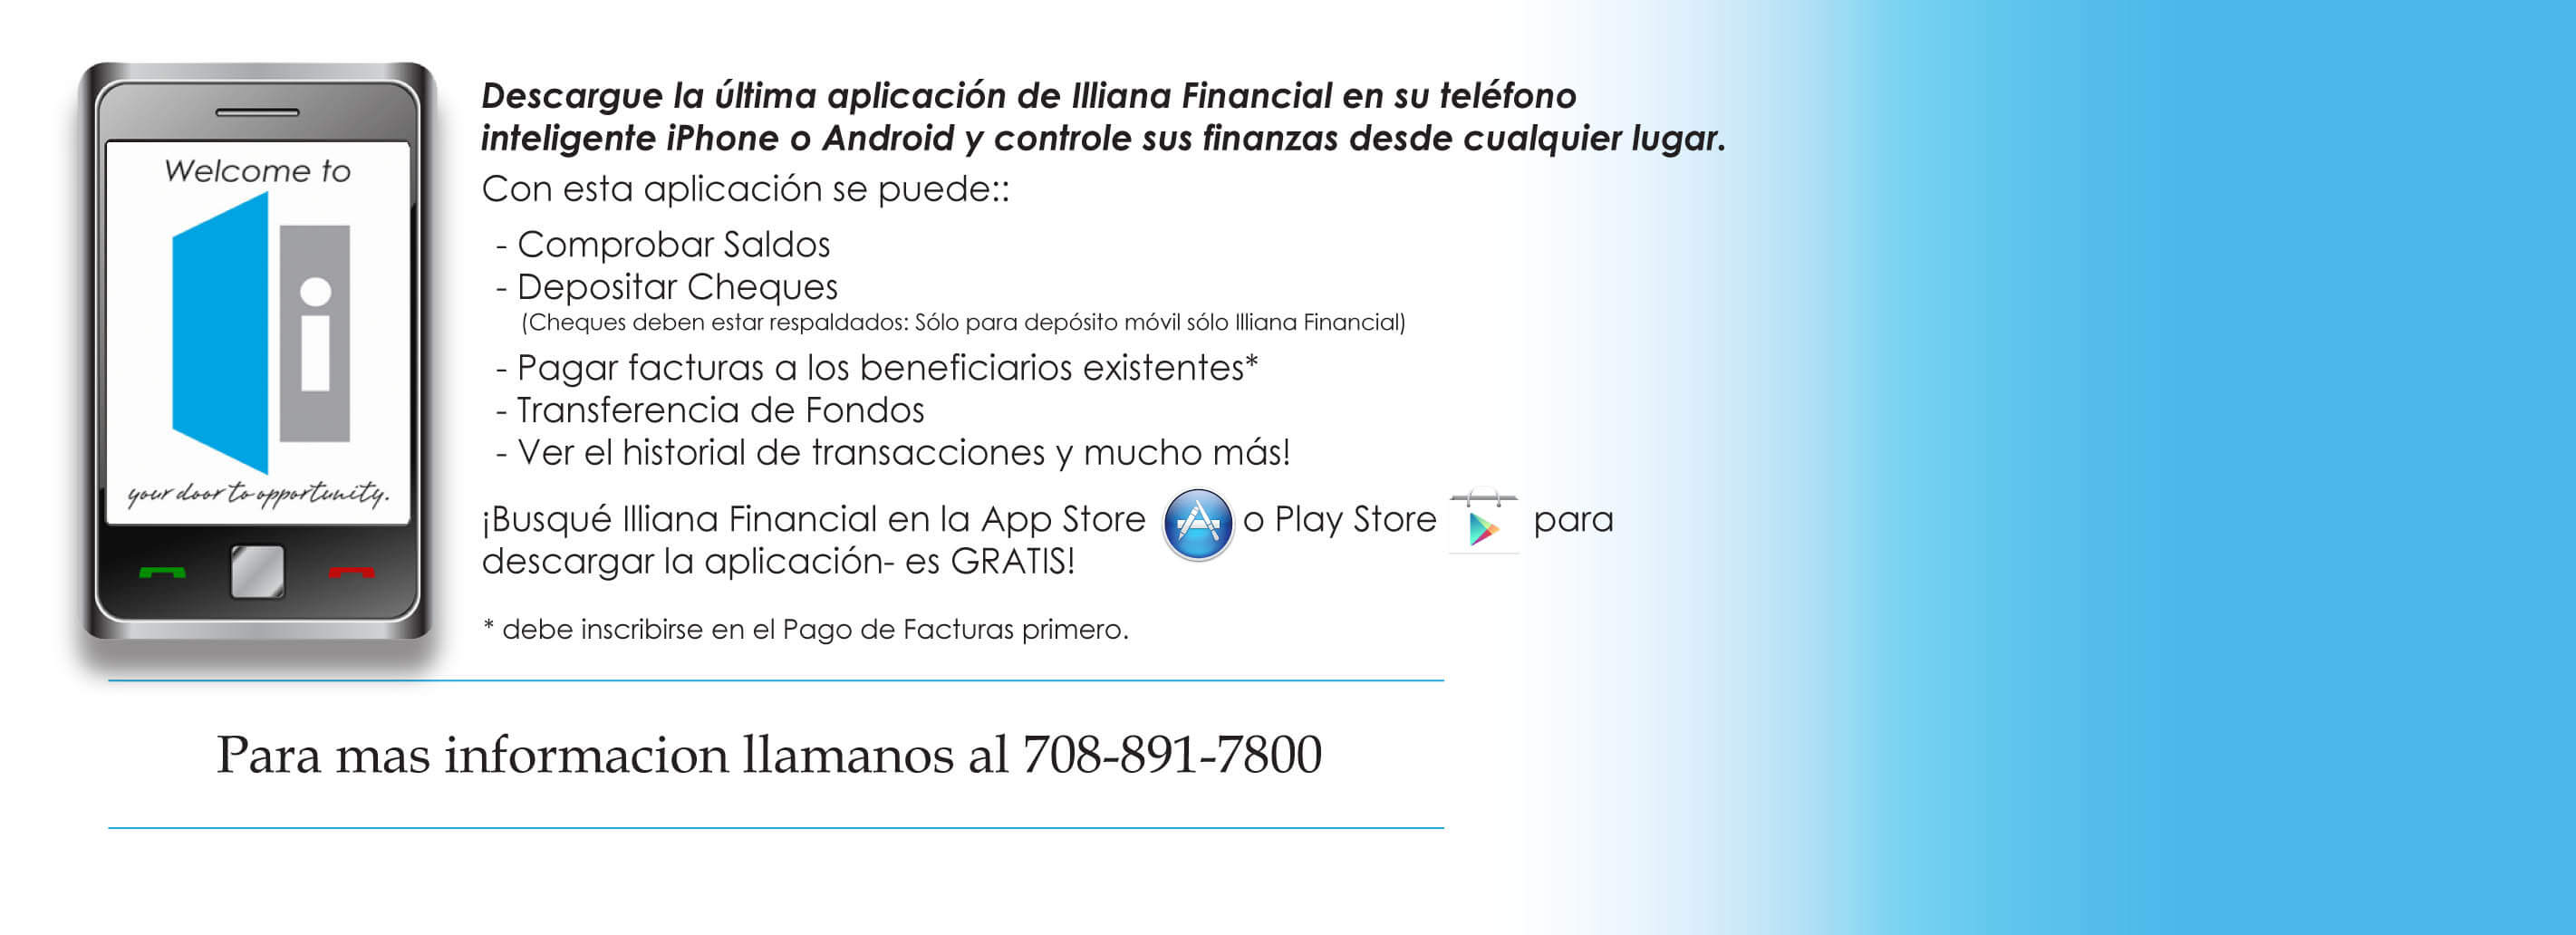 Mobile Banking: Spanish 